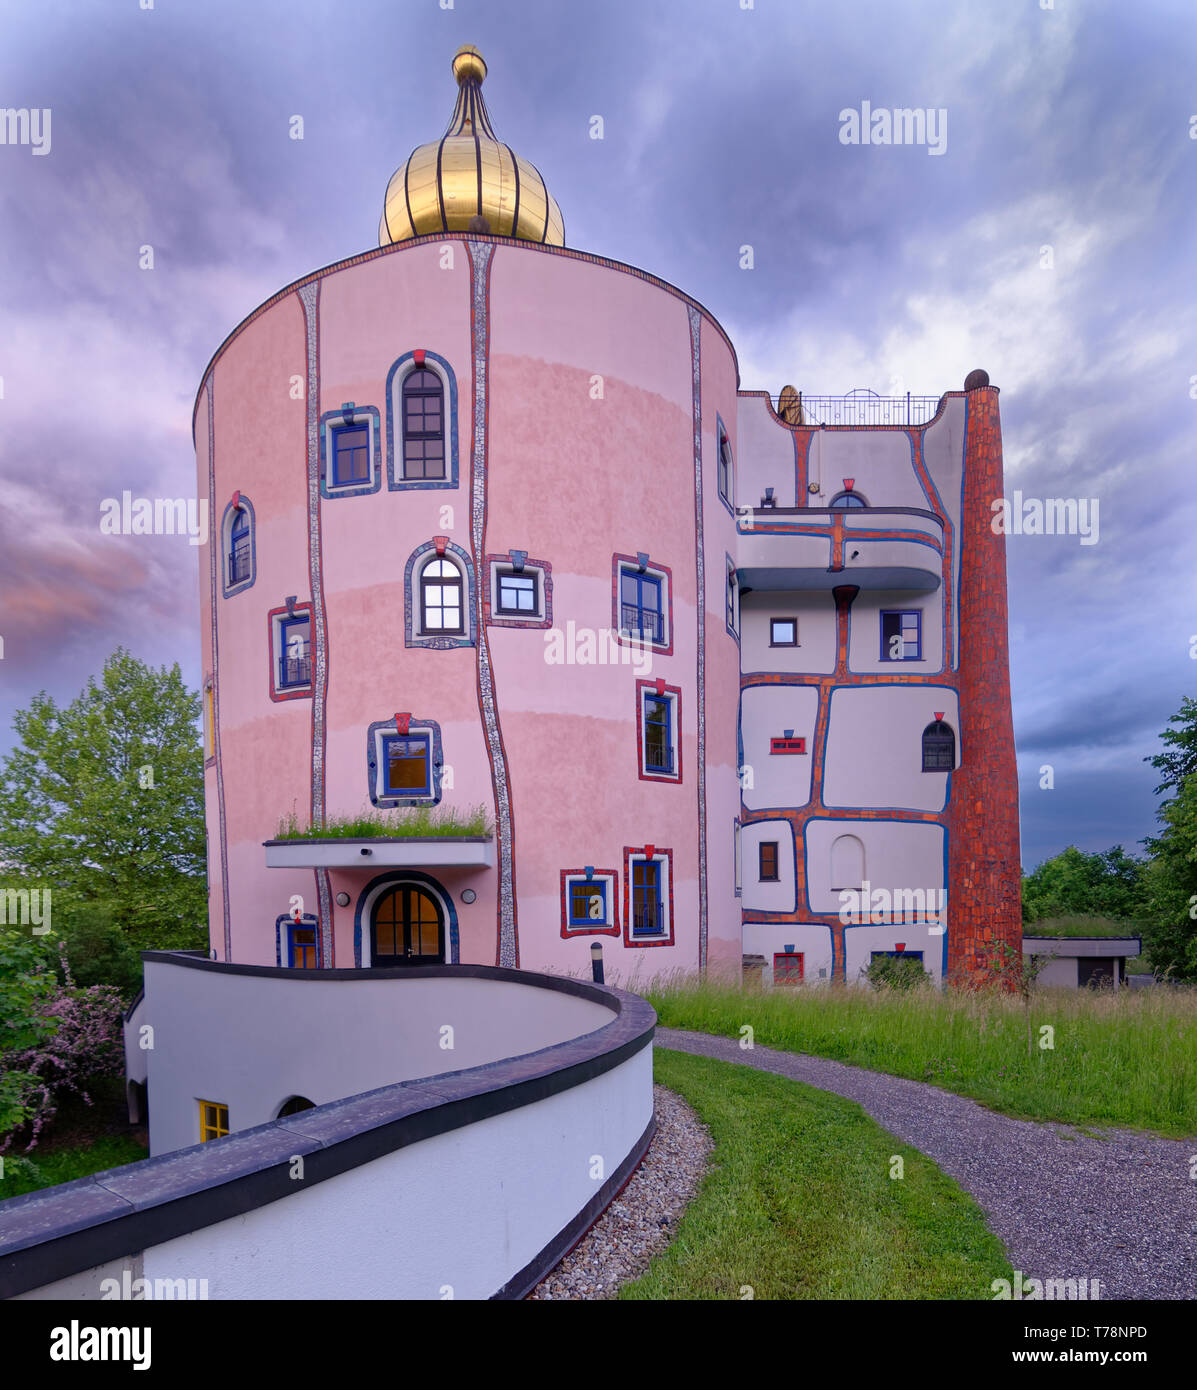 Jusqu'à la voie de la Stammhaus et son dôme doré à rogner Bad Blumau, Autriche, un resort ou hôtel spa conçu par Friedensreich Hundertwasser Banque D'Images